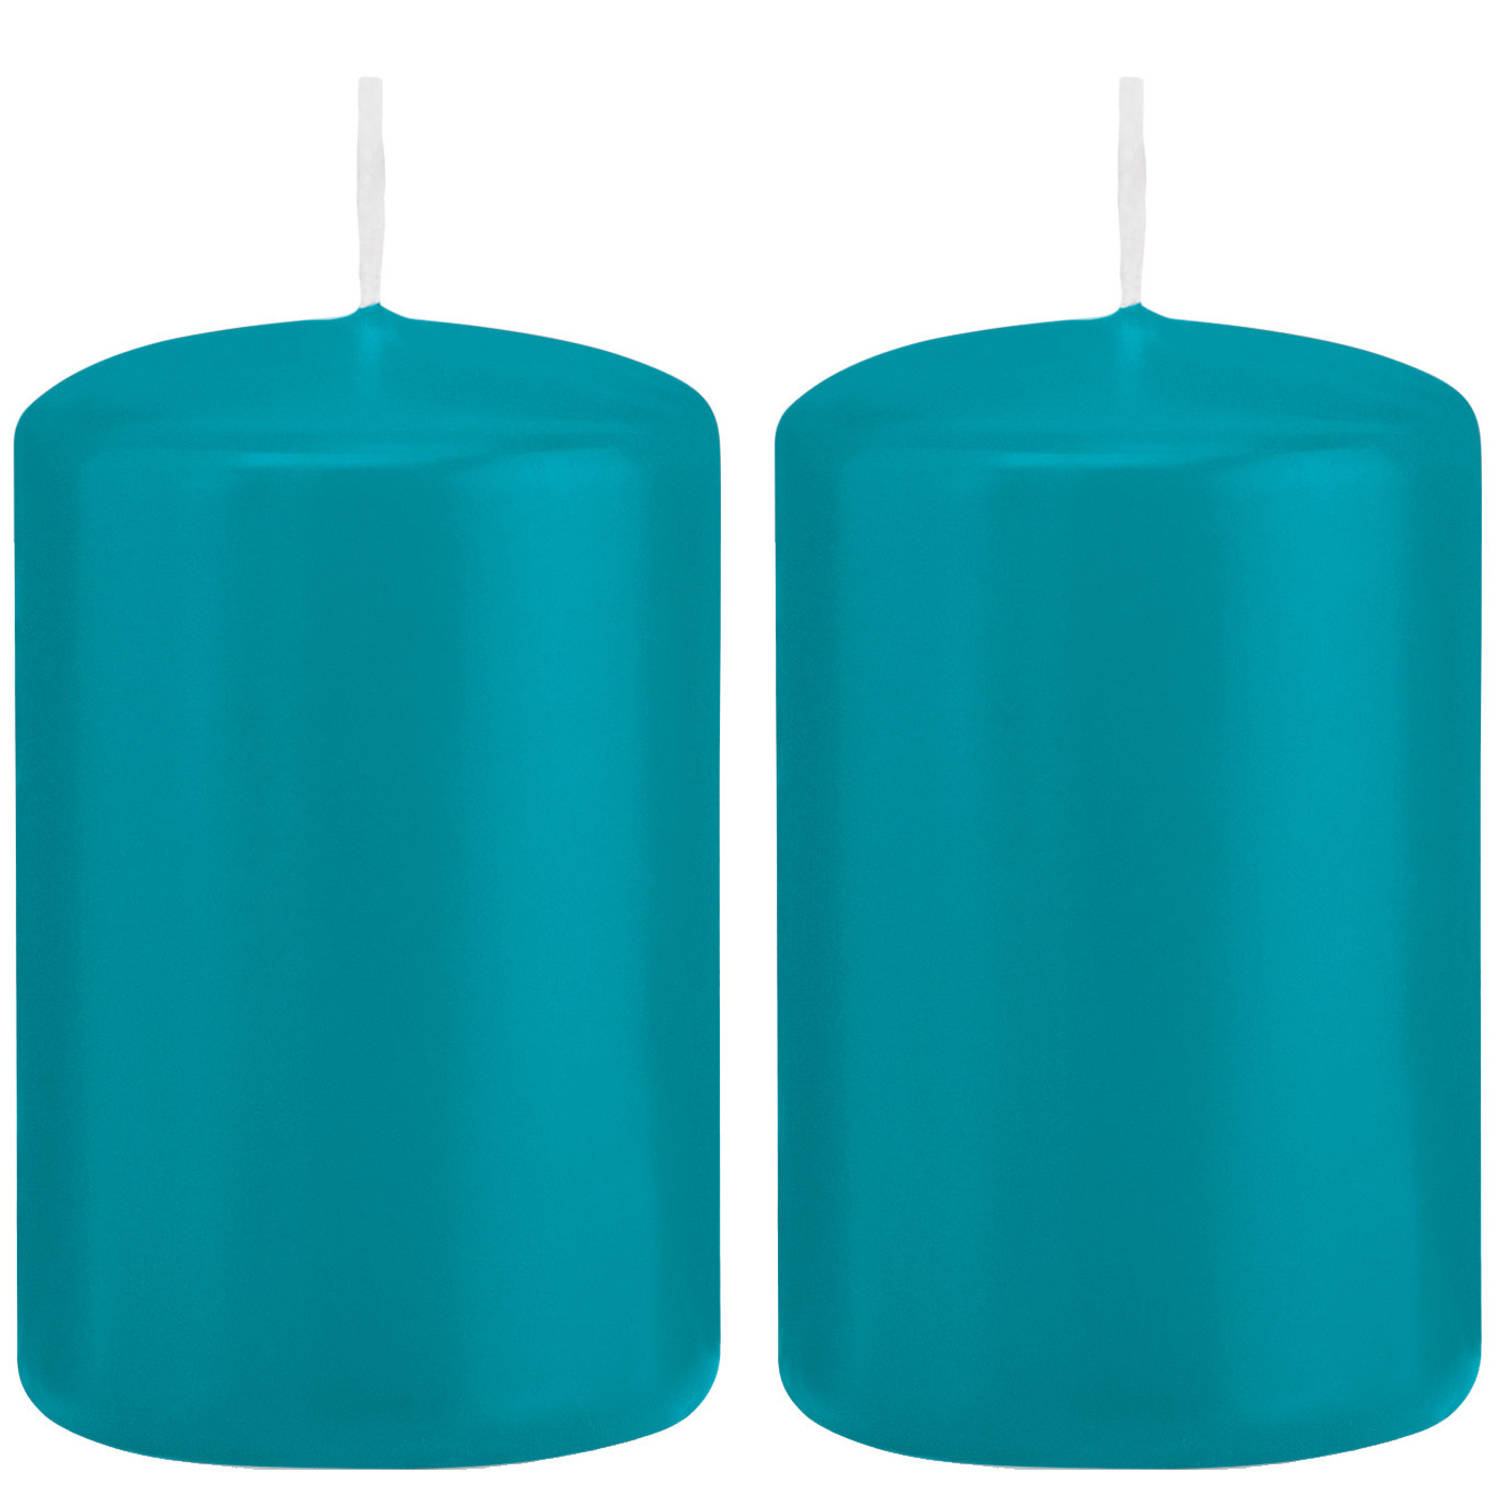 Einde Aanhoudend Geen 2x Turquoise blauwe cilinderkaarsen/stompkaarsen 5 x 8 cm 18 branduren -  Stompkaarsen | Blokker